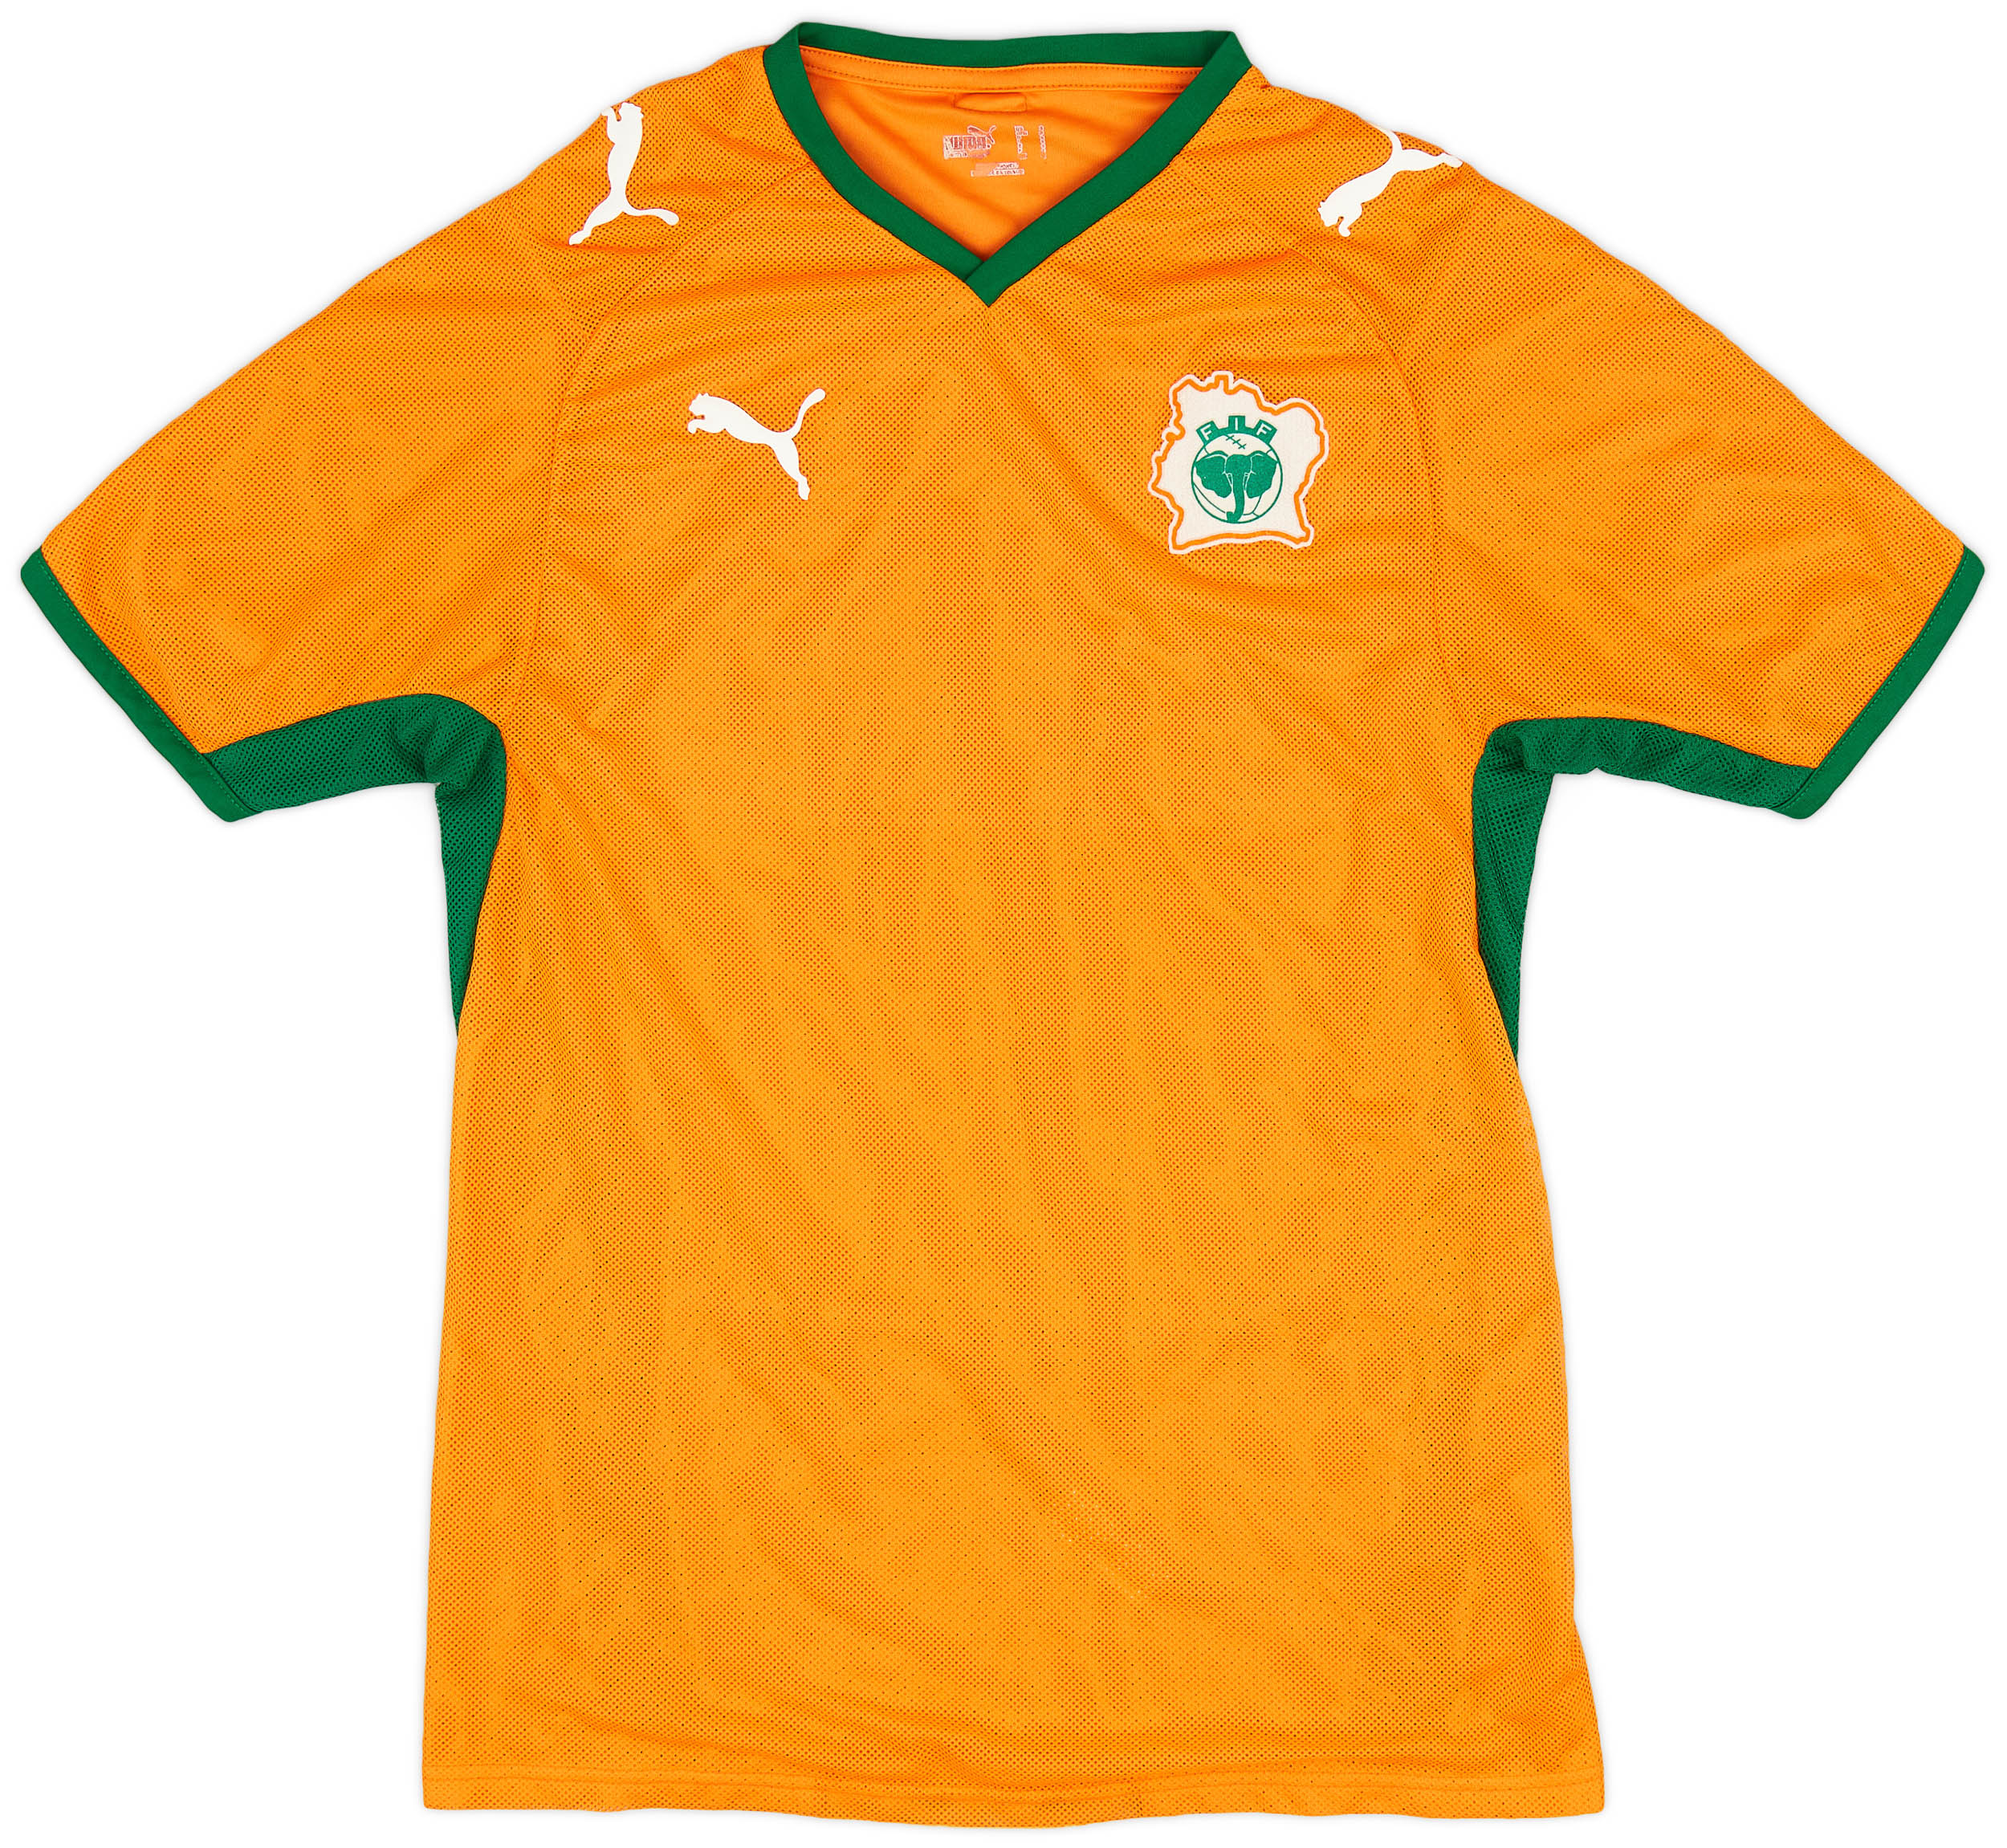 Côte d'Ivoire  home shirt (Original)